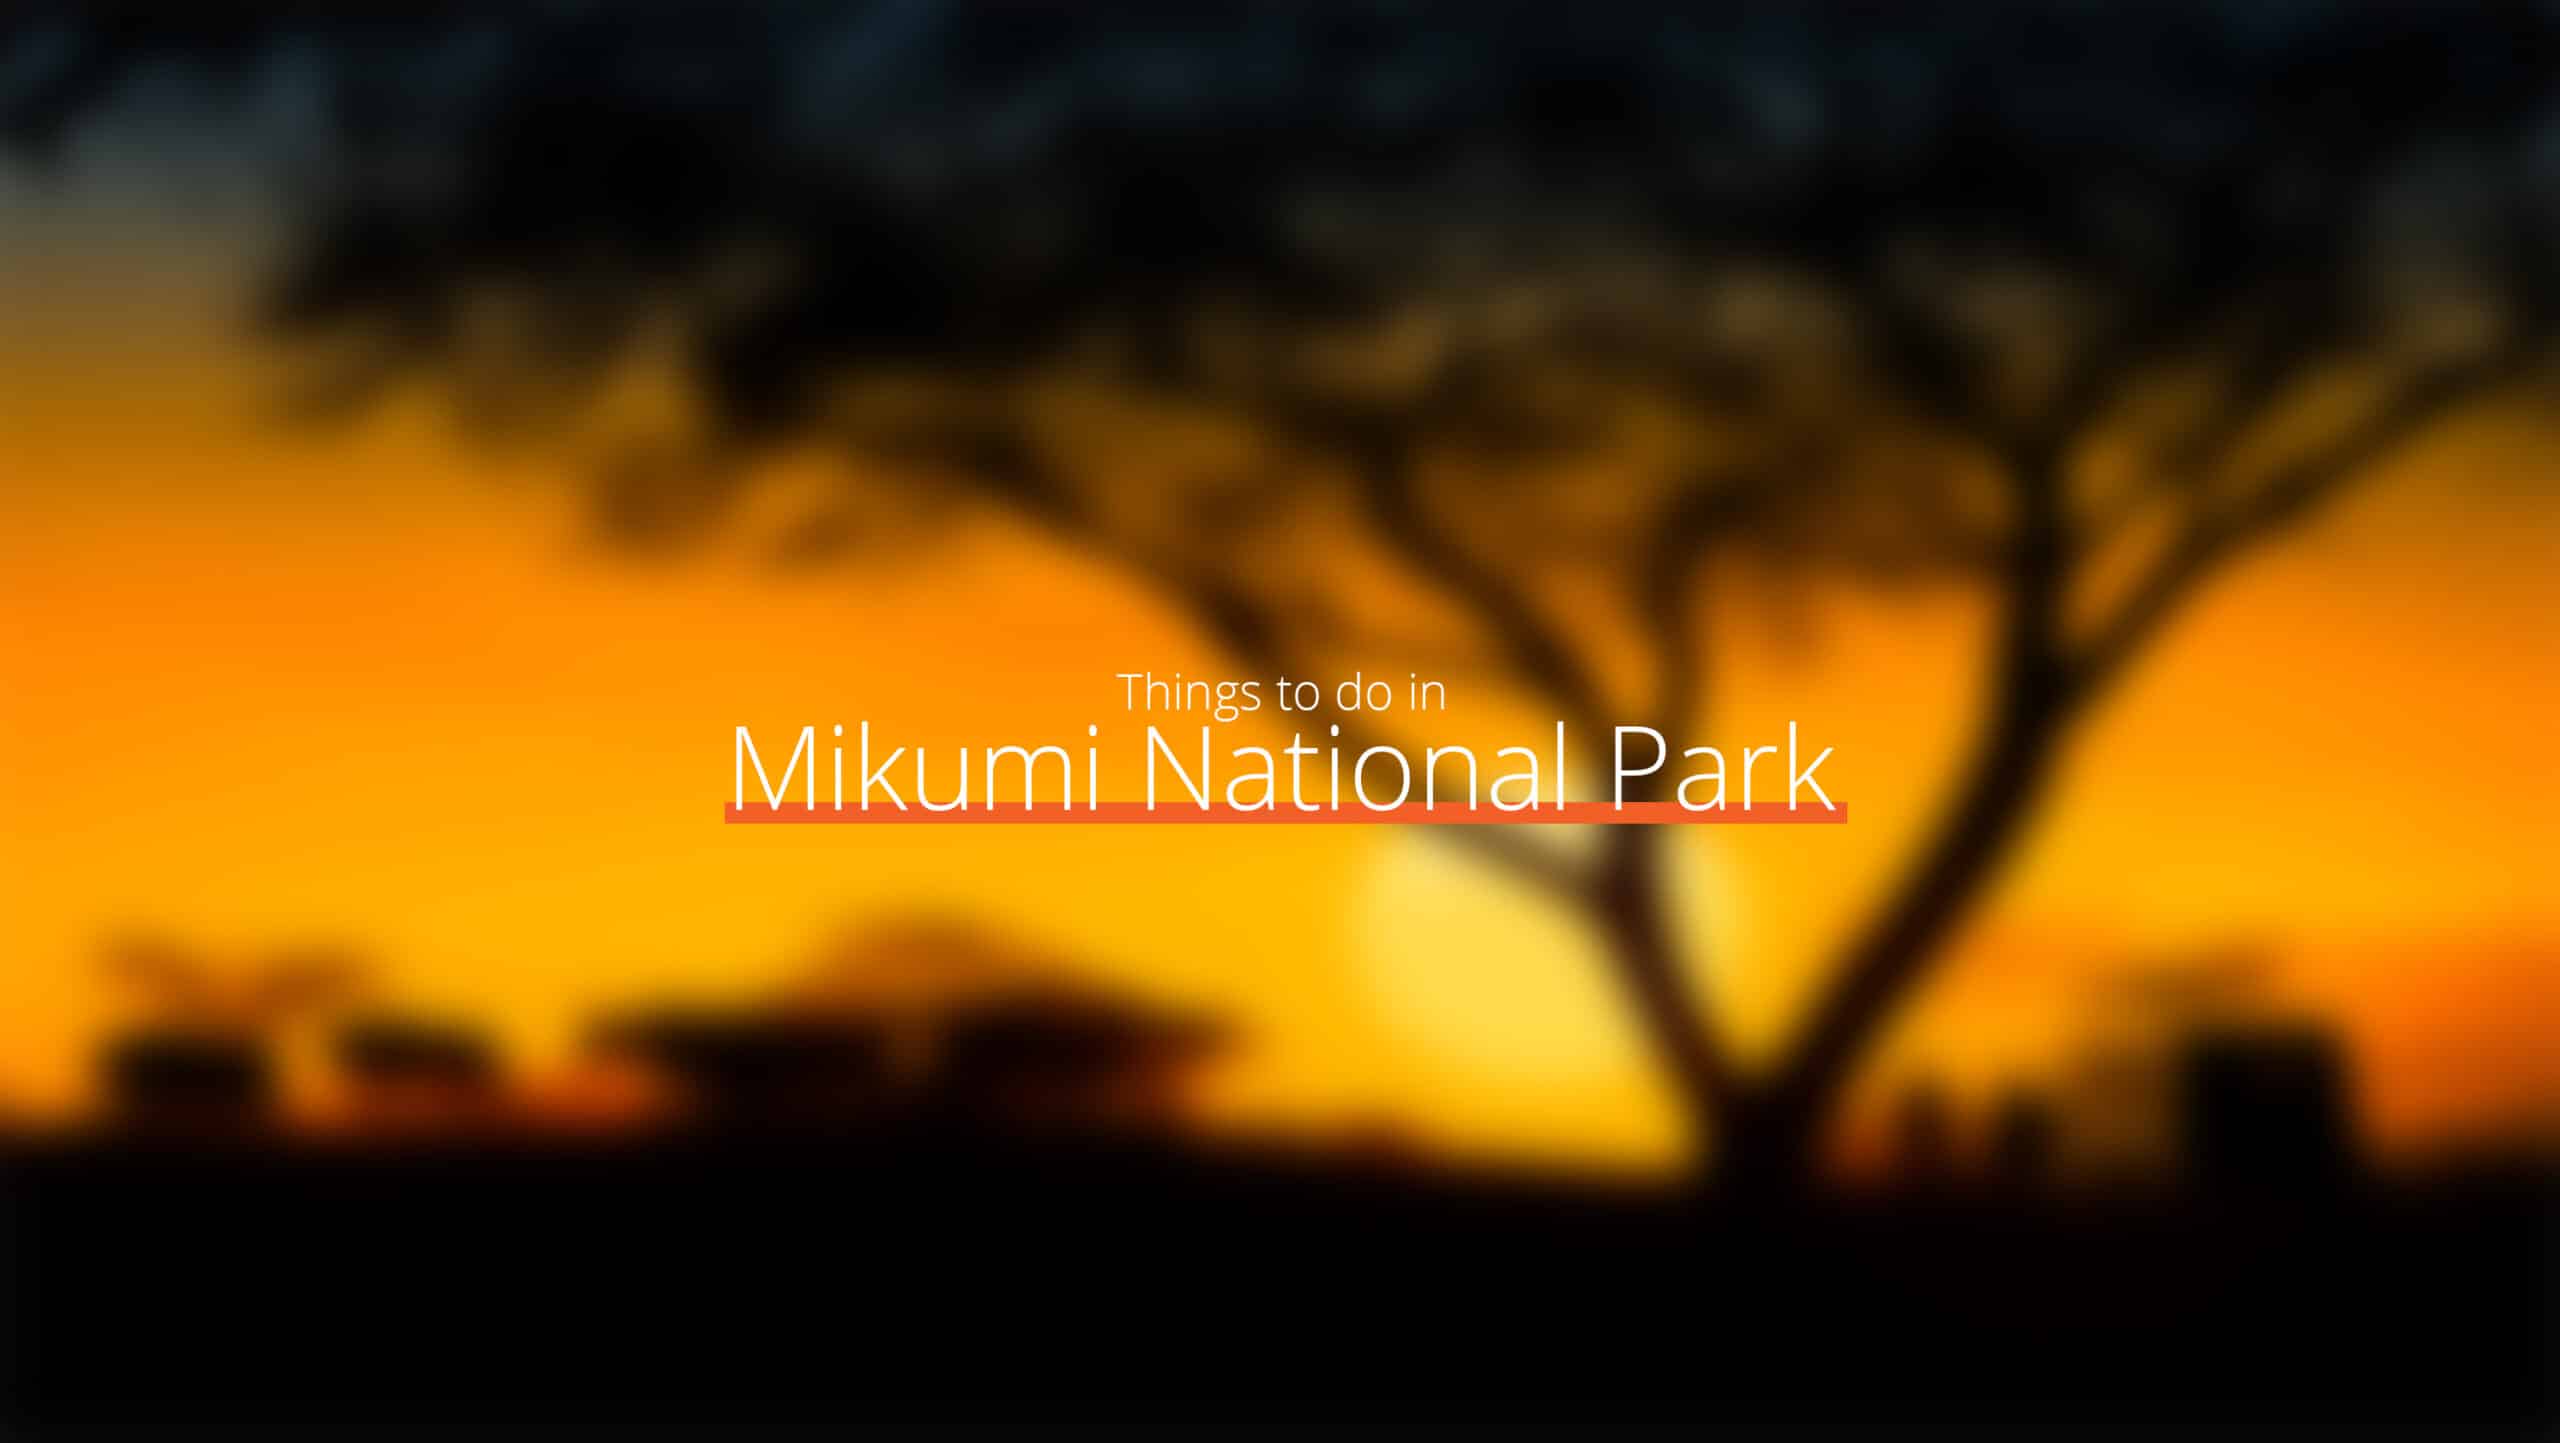 Tanzania - mikumi nationalpark 1 skalad - lokala lagar och seder